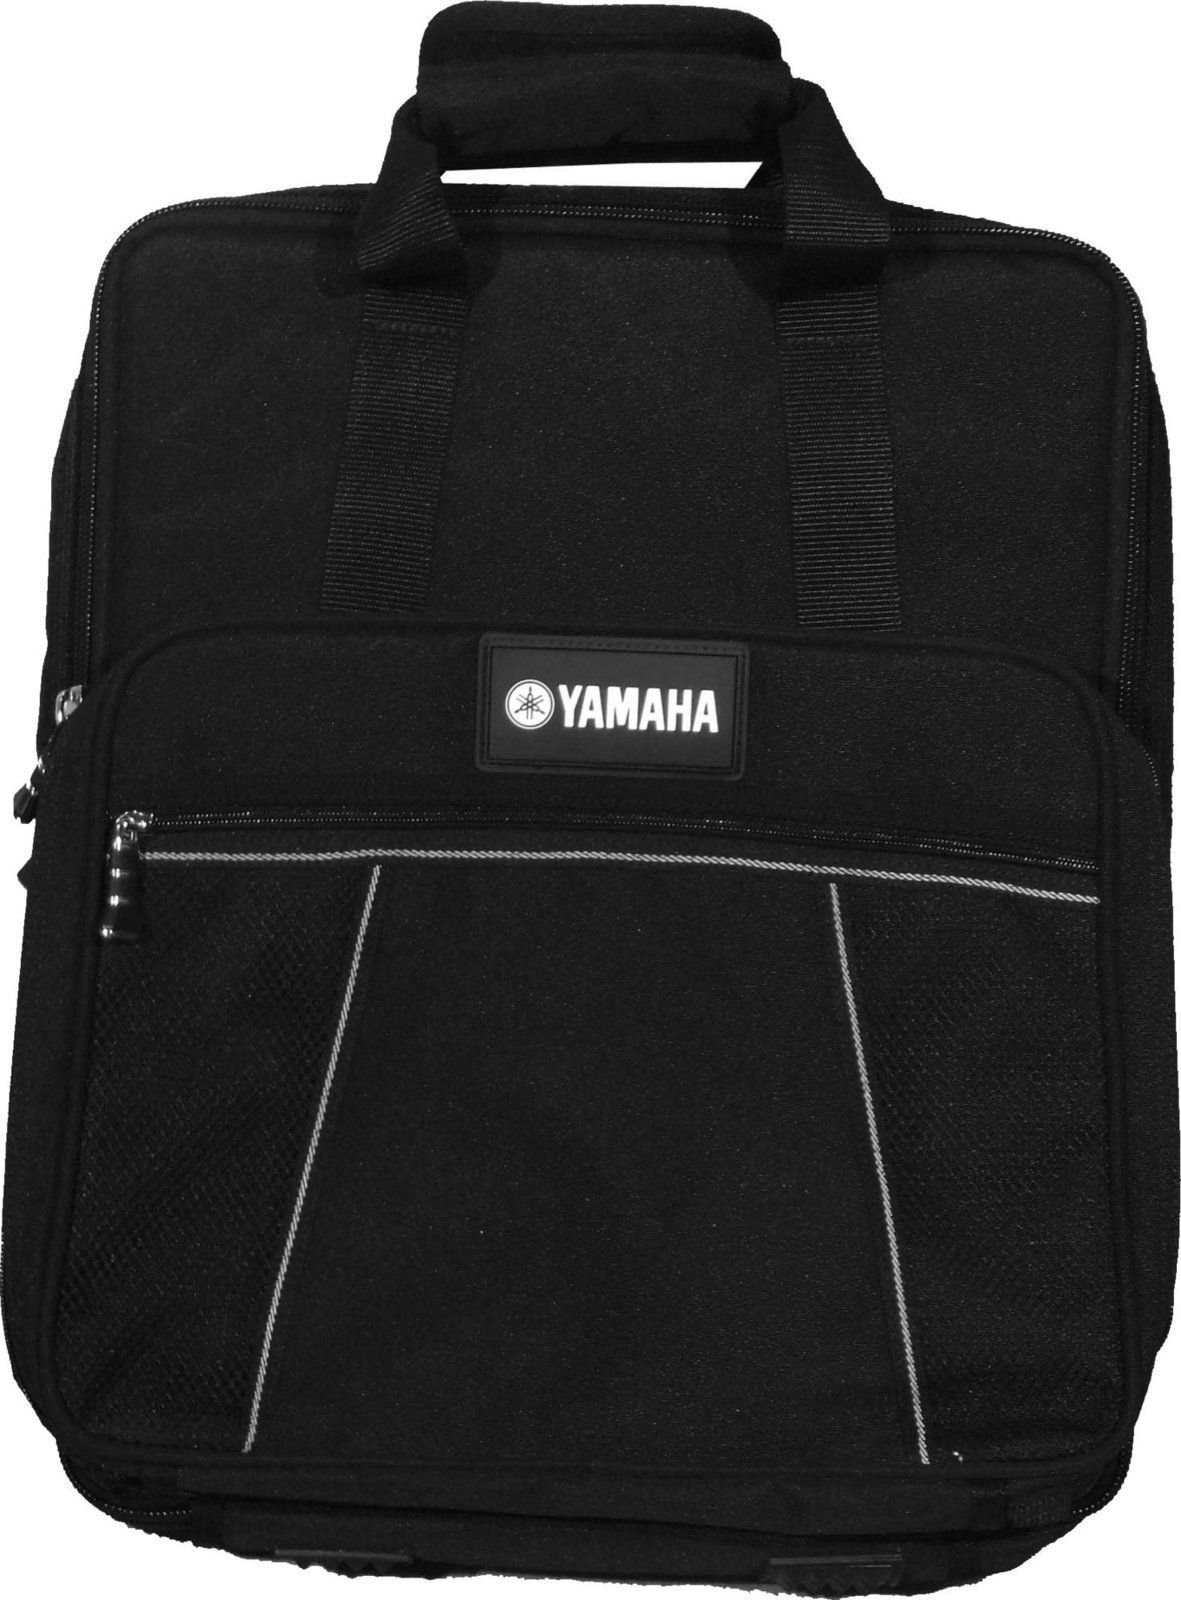 Θήκη / Βαλίτσα για Εξοπλισμό Ηχητικών Συσκευών Yamaha SCMG12